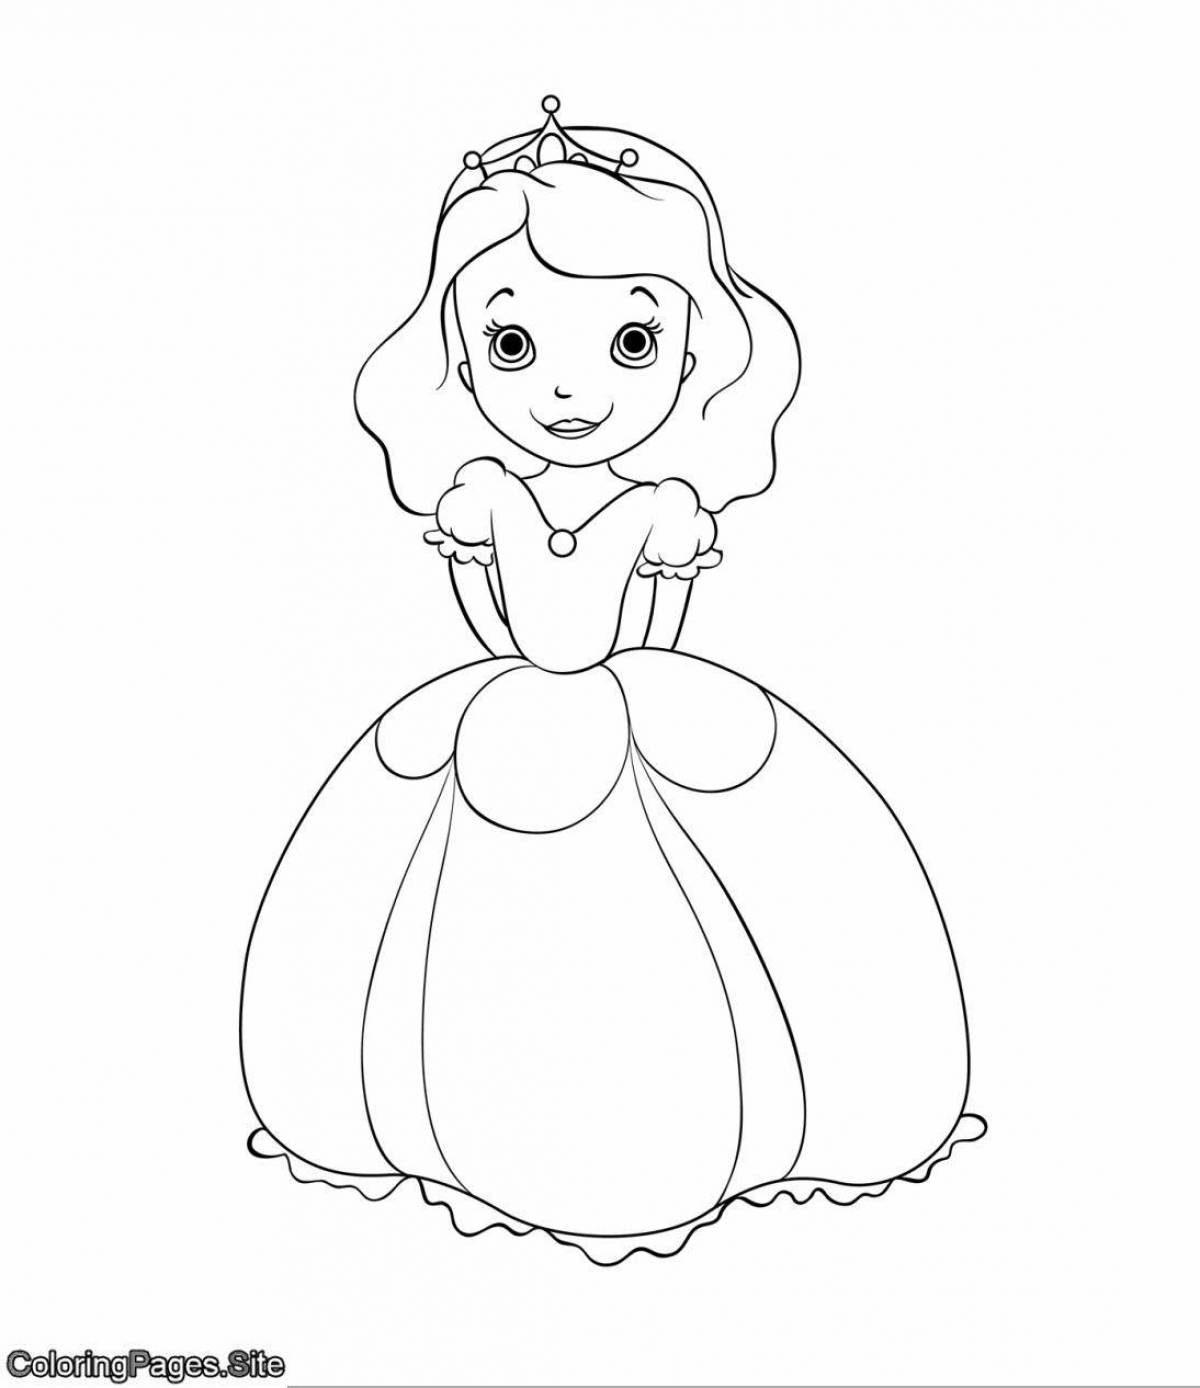 Грандиозная раскраска принцесса для детей